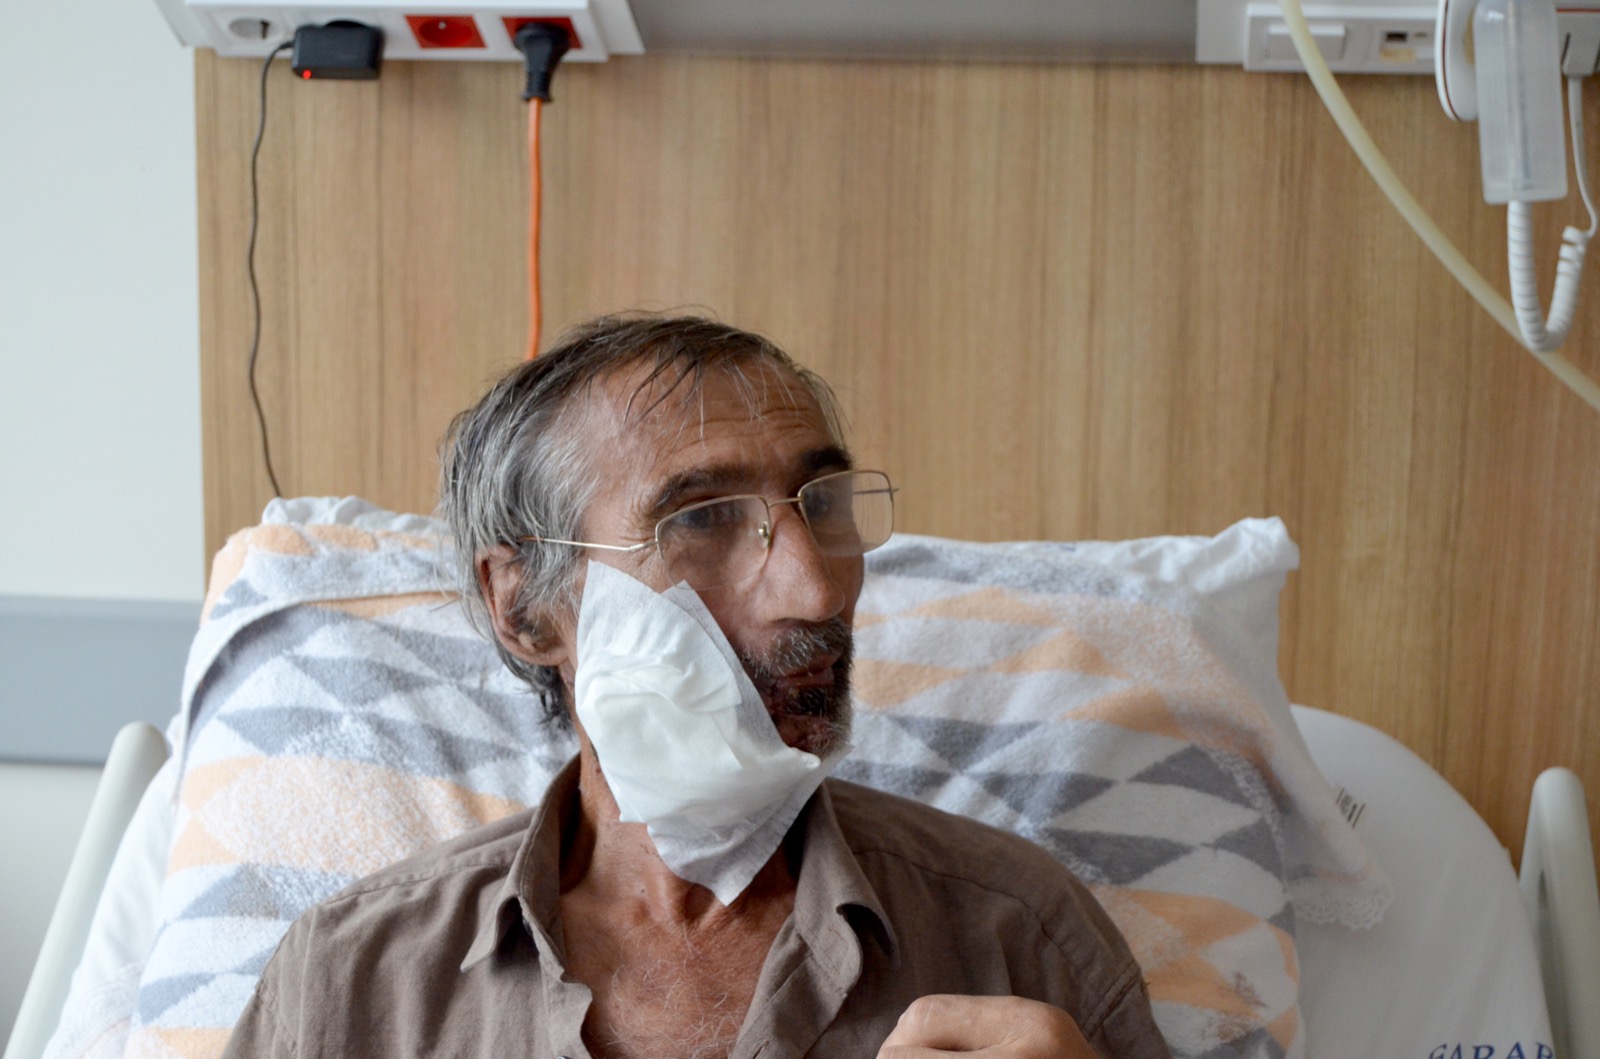 Trabzon’da, ağzındaki tümör nedeniyle su bile yutamayan hasta sağlığına kavuşturuldu